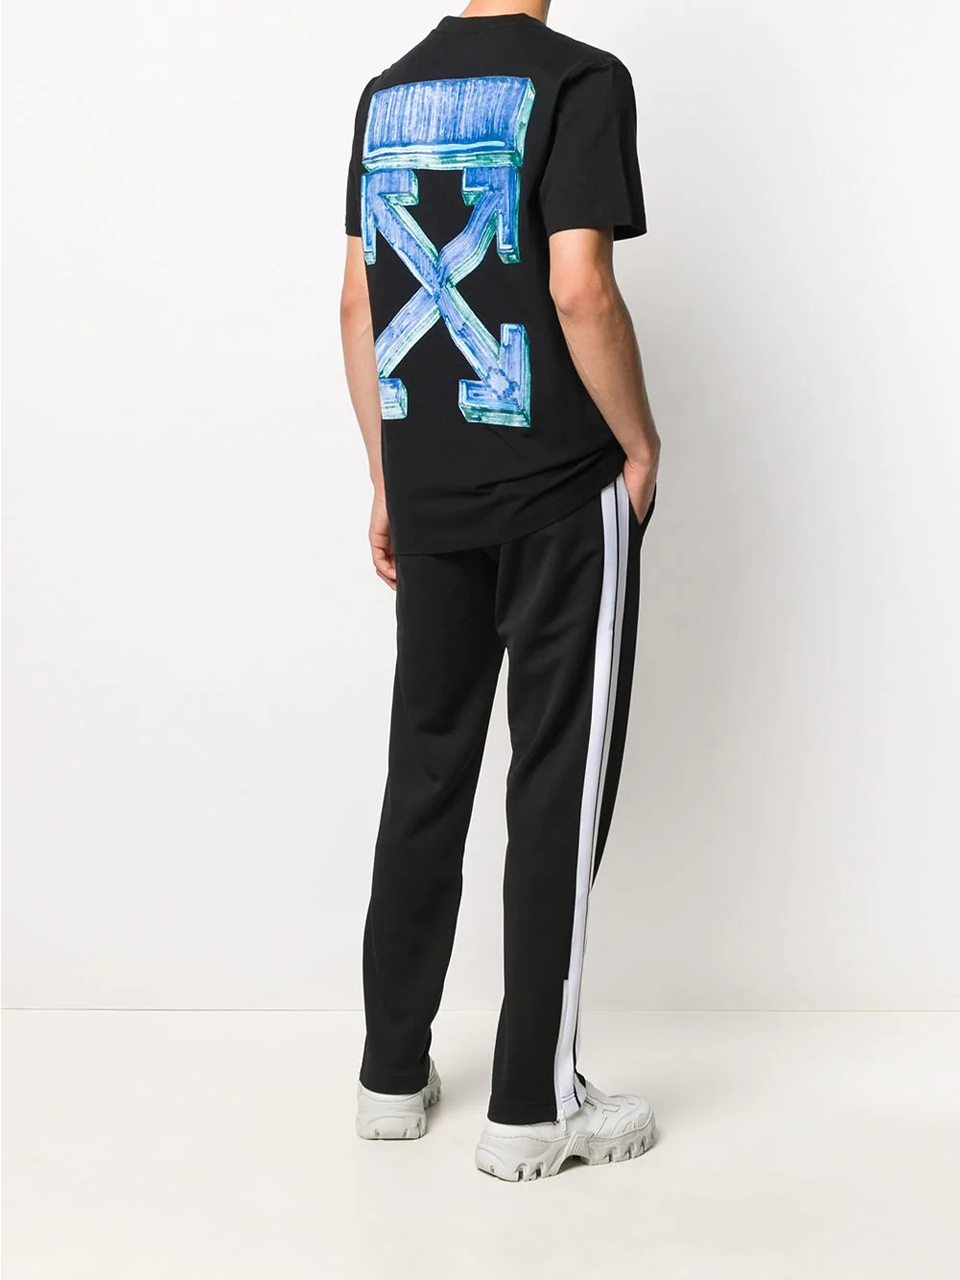 Imagem de: Camiseta Off-White Marker Arrows Preta com Estampa Azul